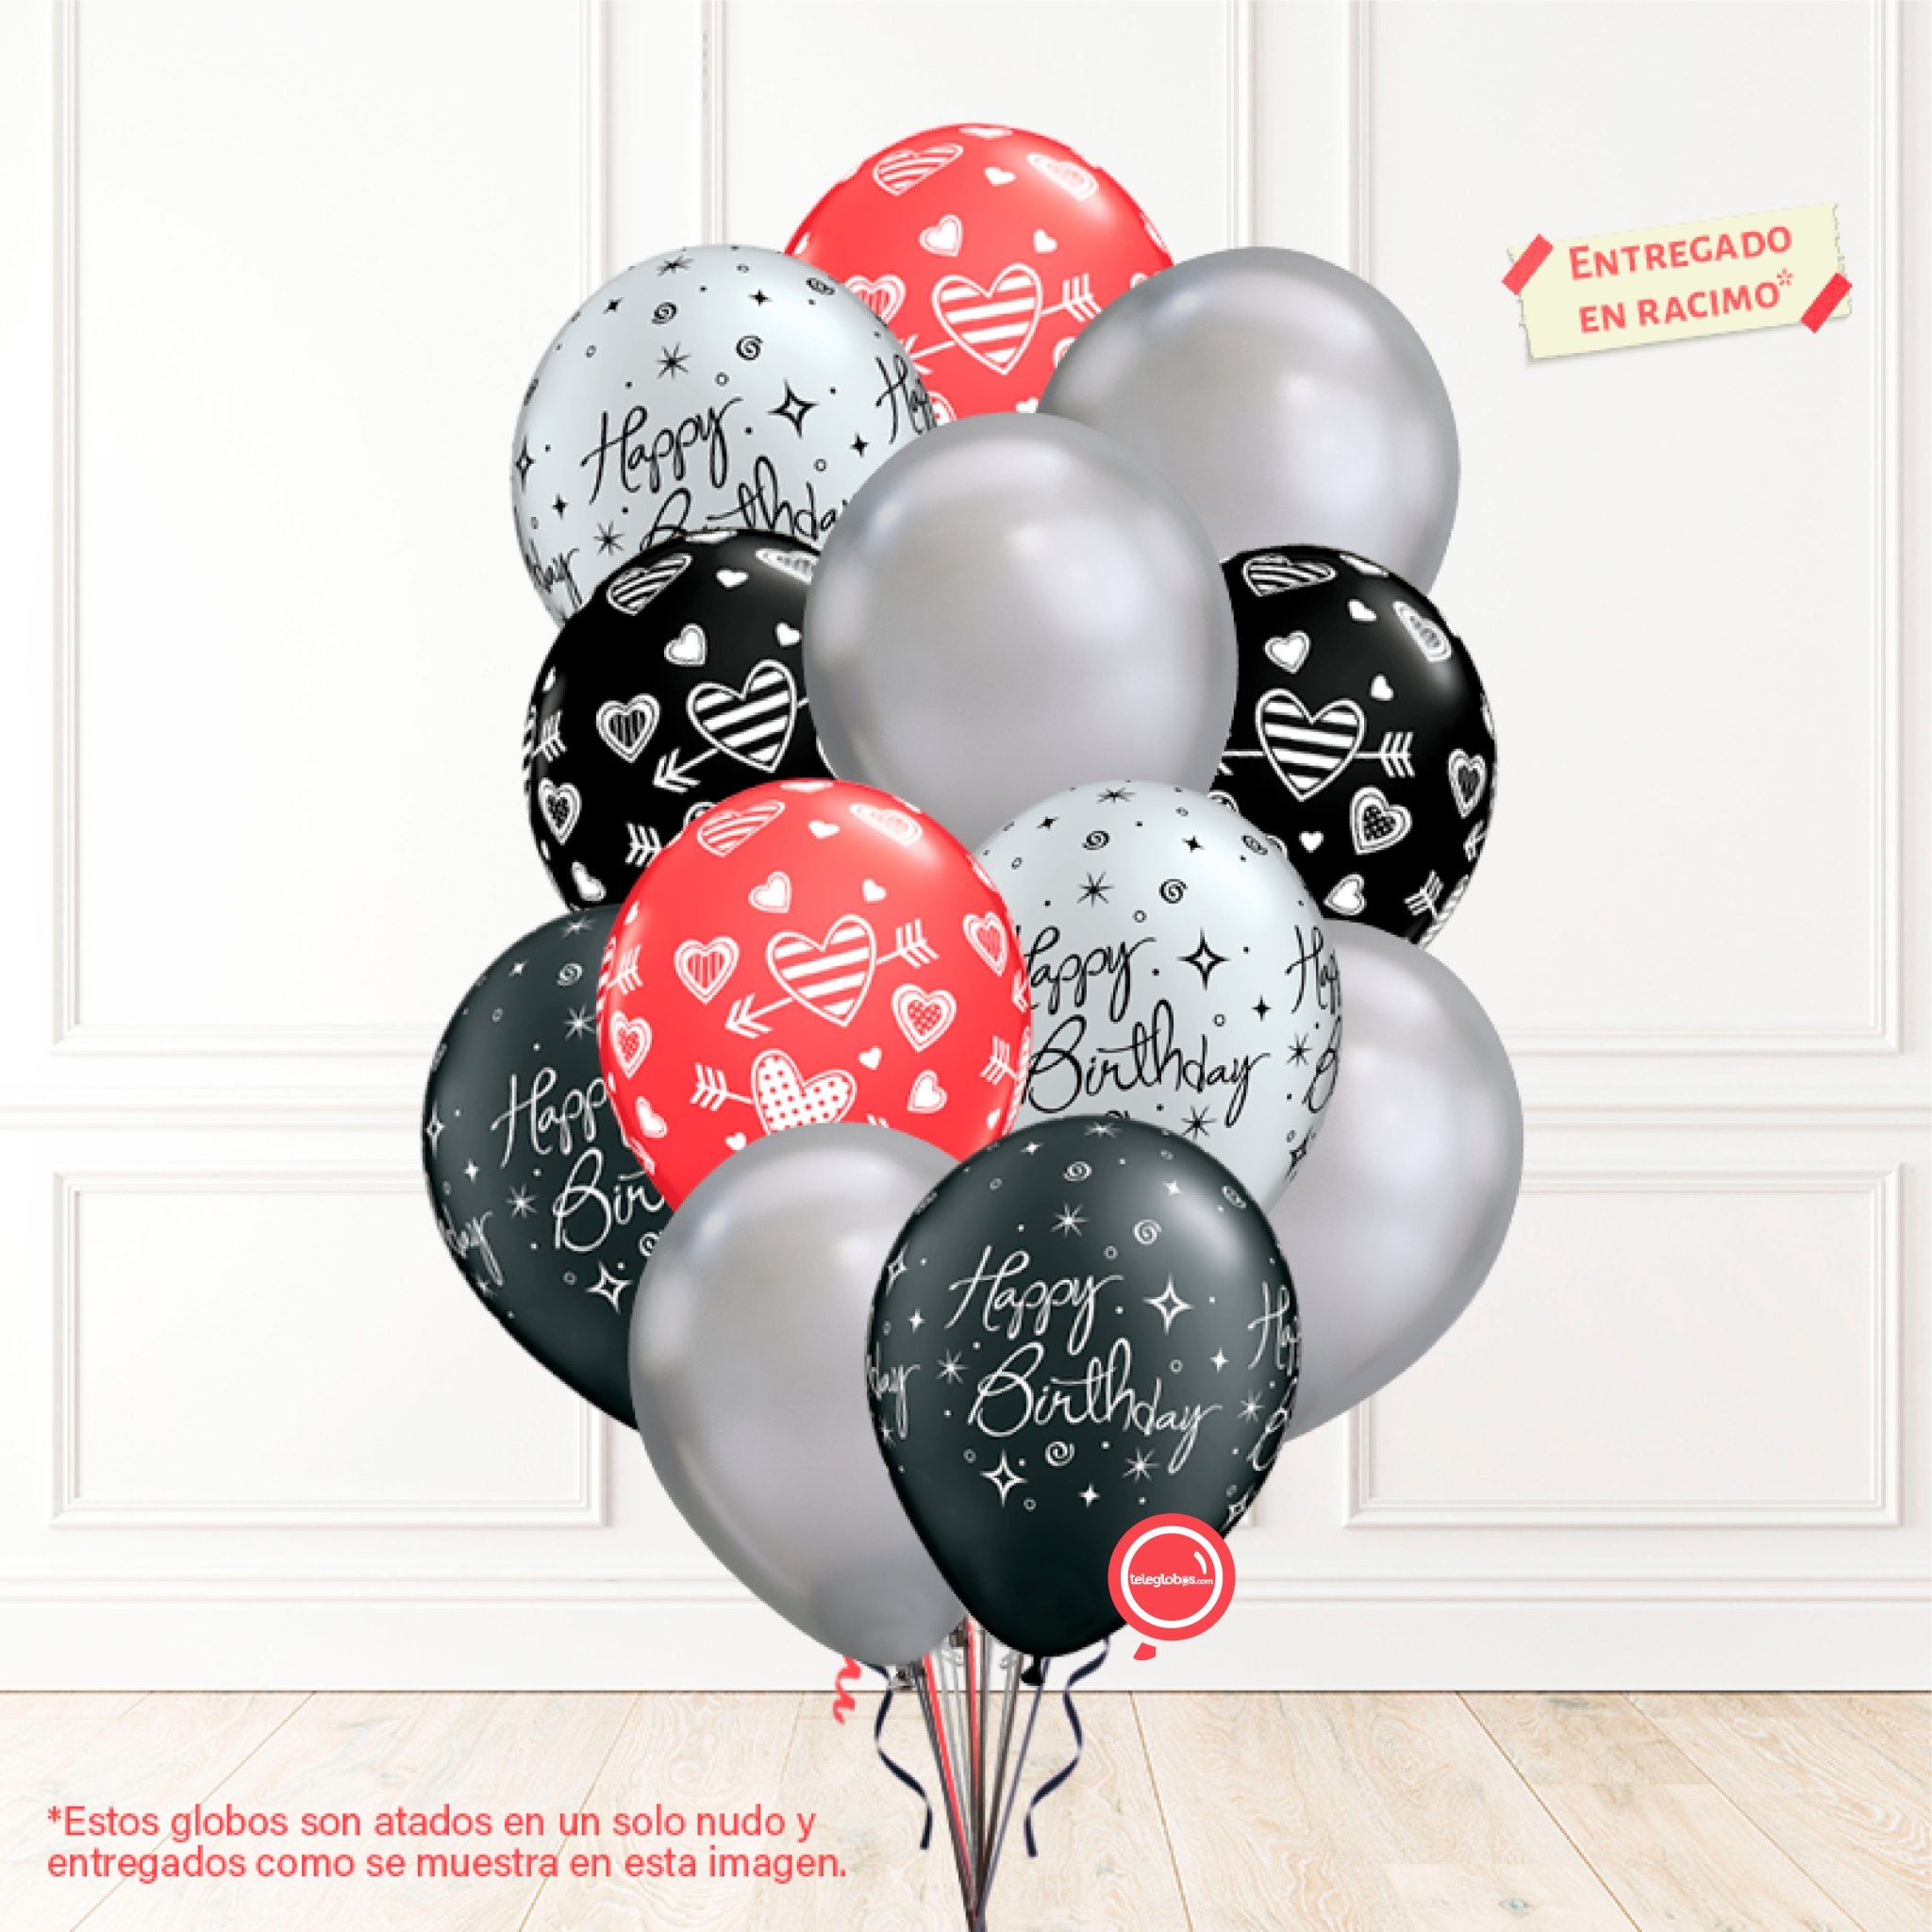 12 globos inflados con helio -Happy Birthday/Corazones/Cromo- Bio* -RAC019- | Globos y Regalos Teleglobos.com.mx.